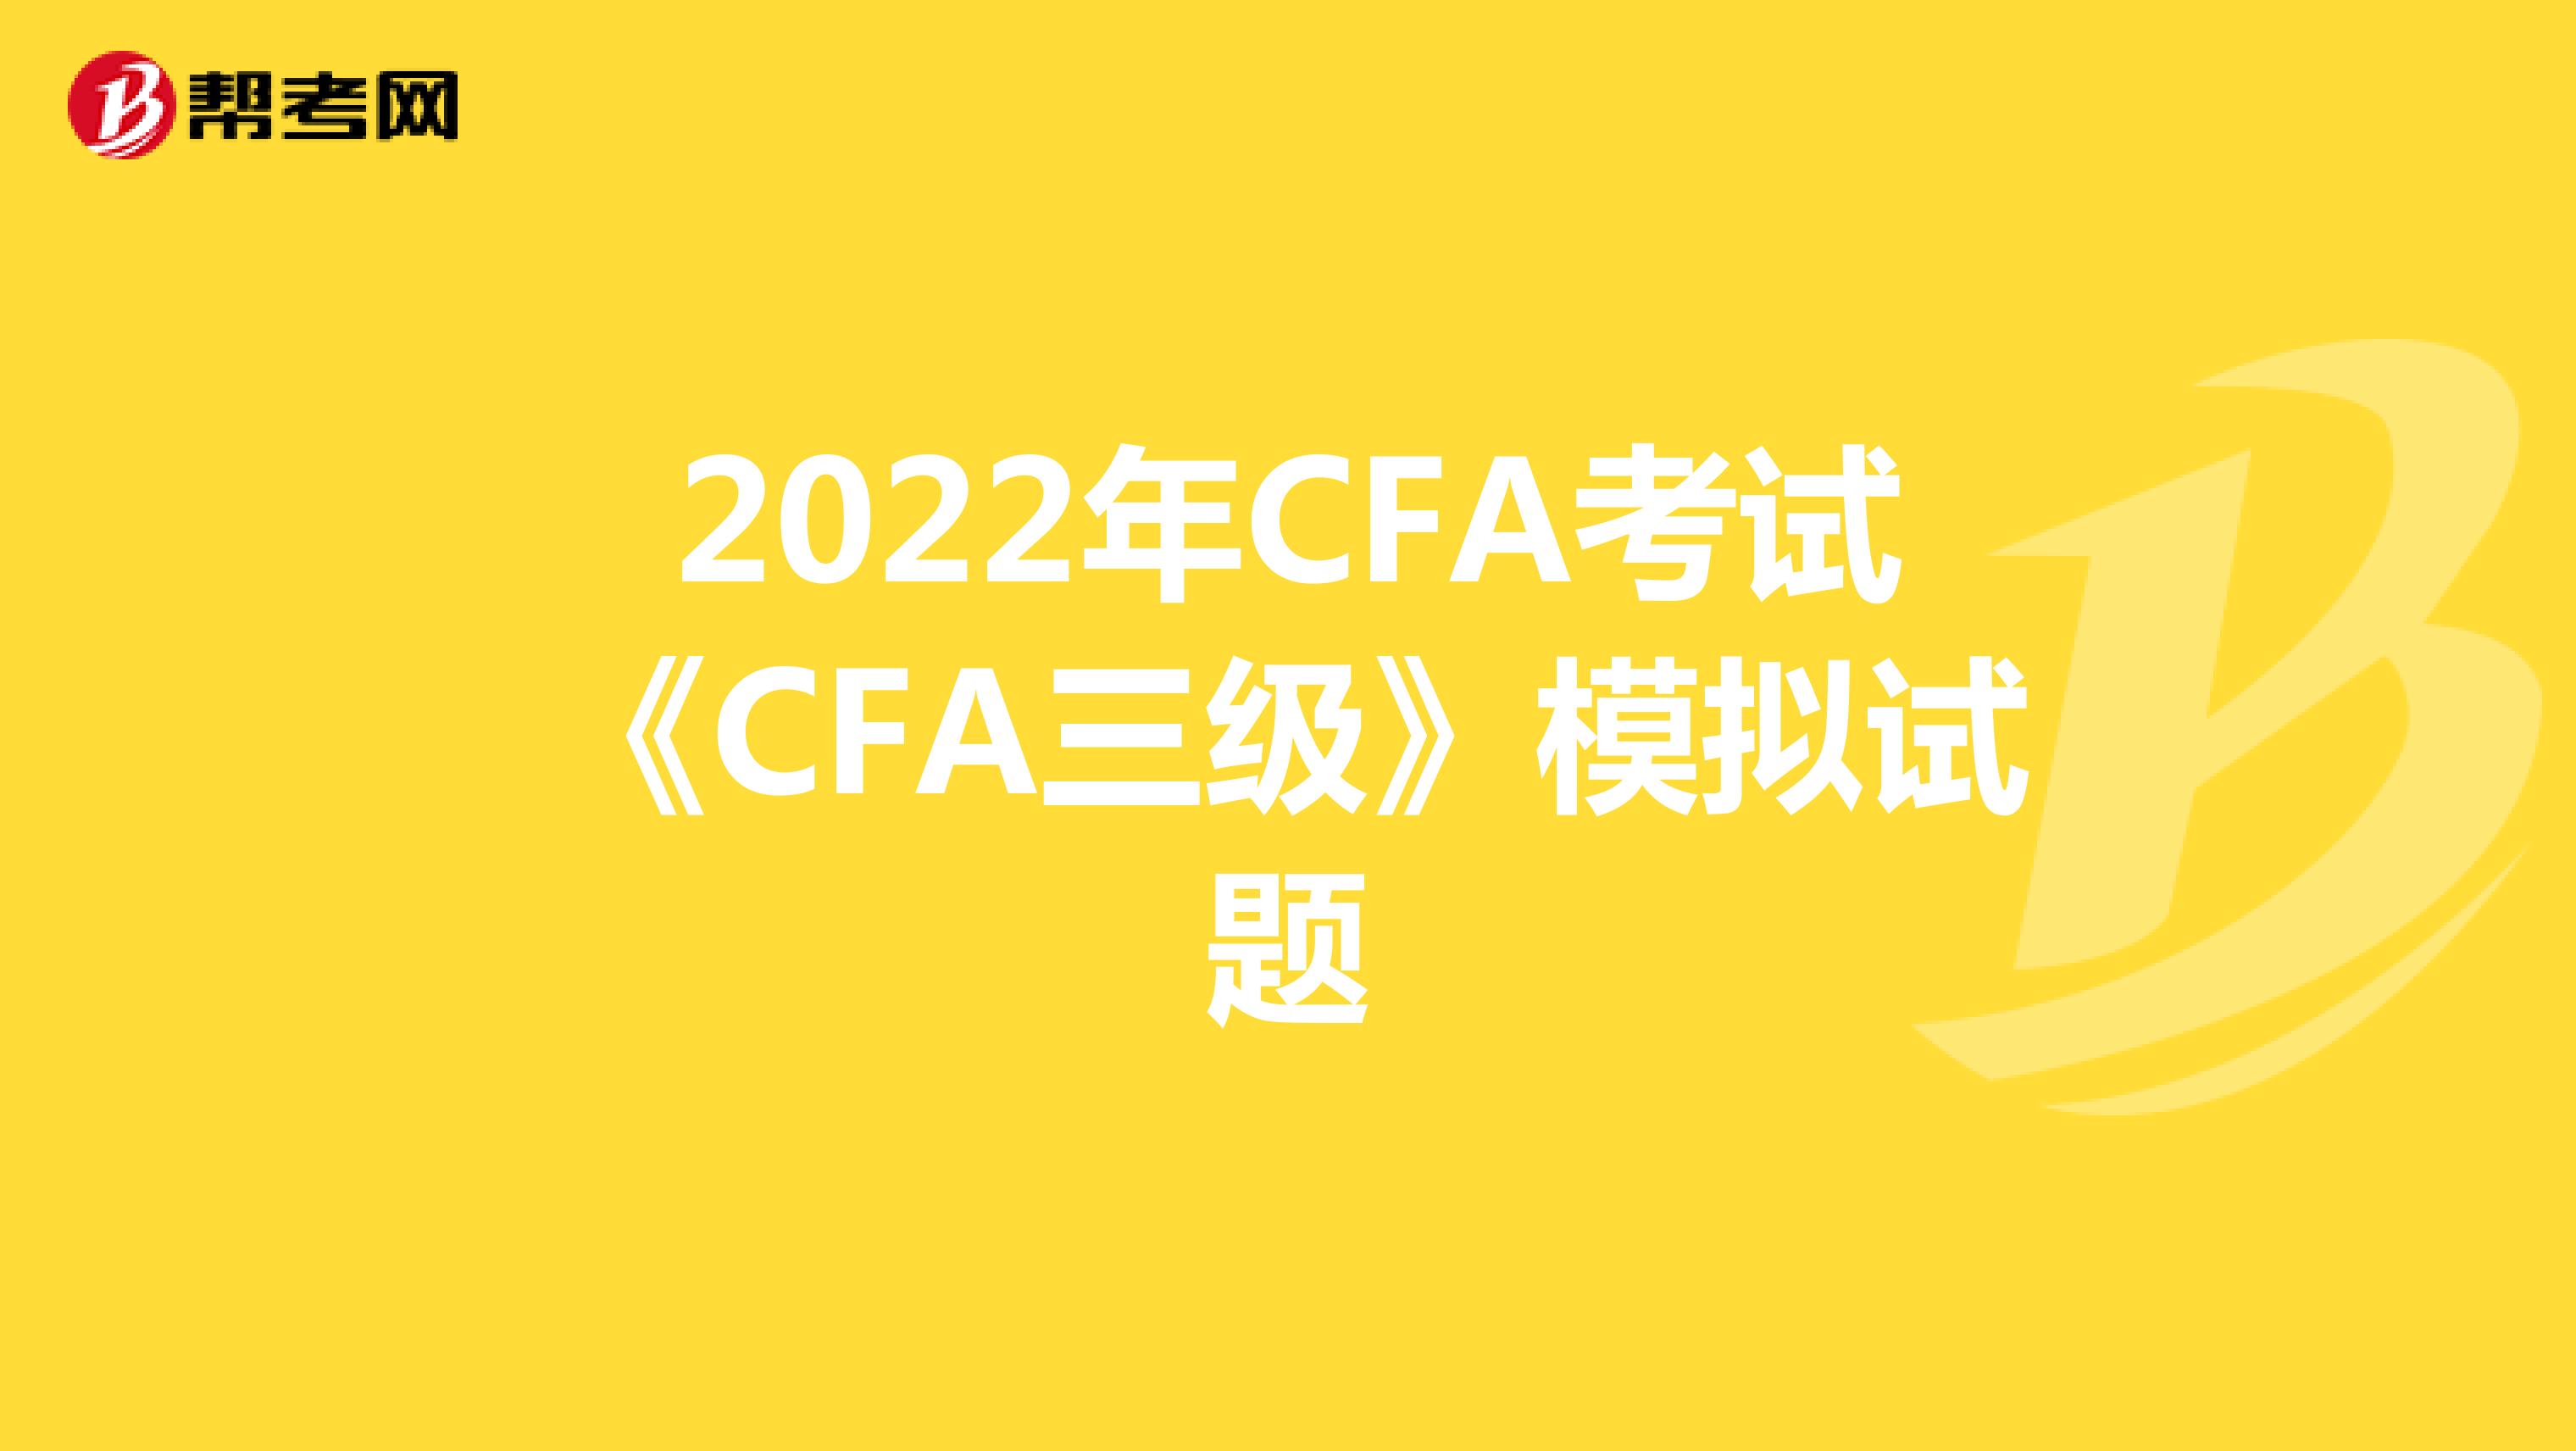 2022年CFA考试《CFA三级》模拟试题